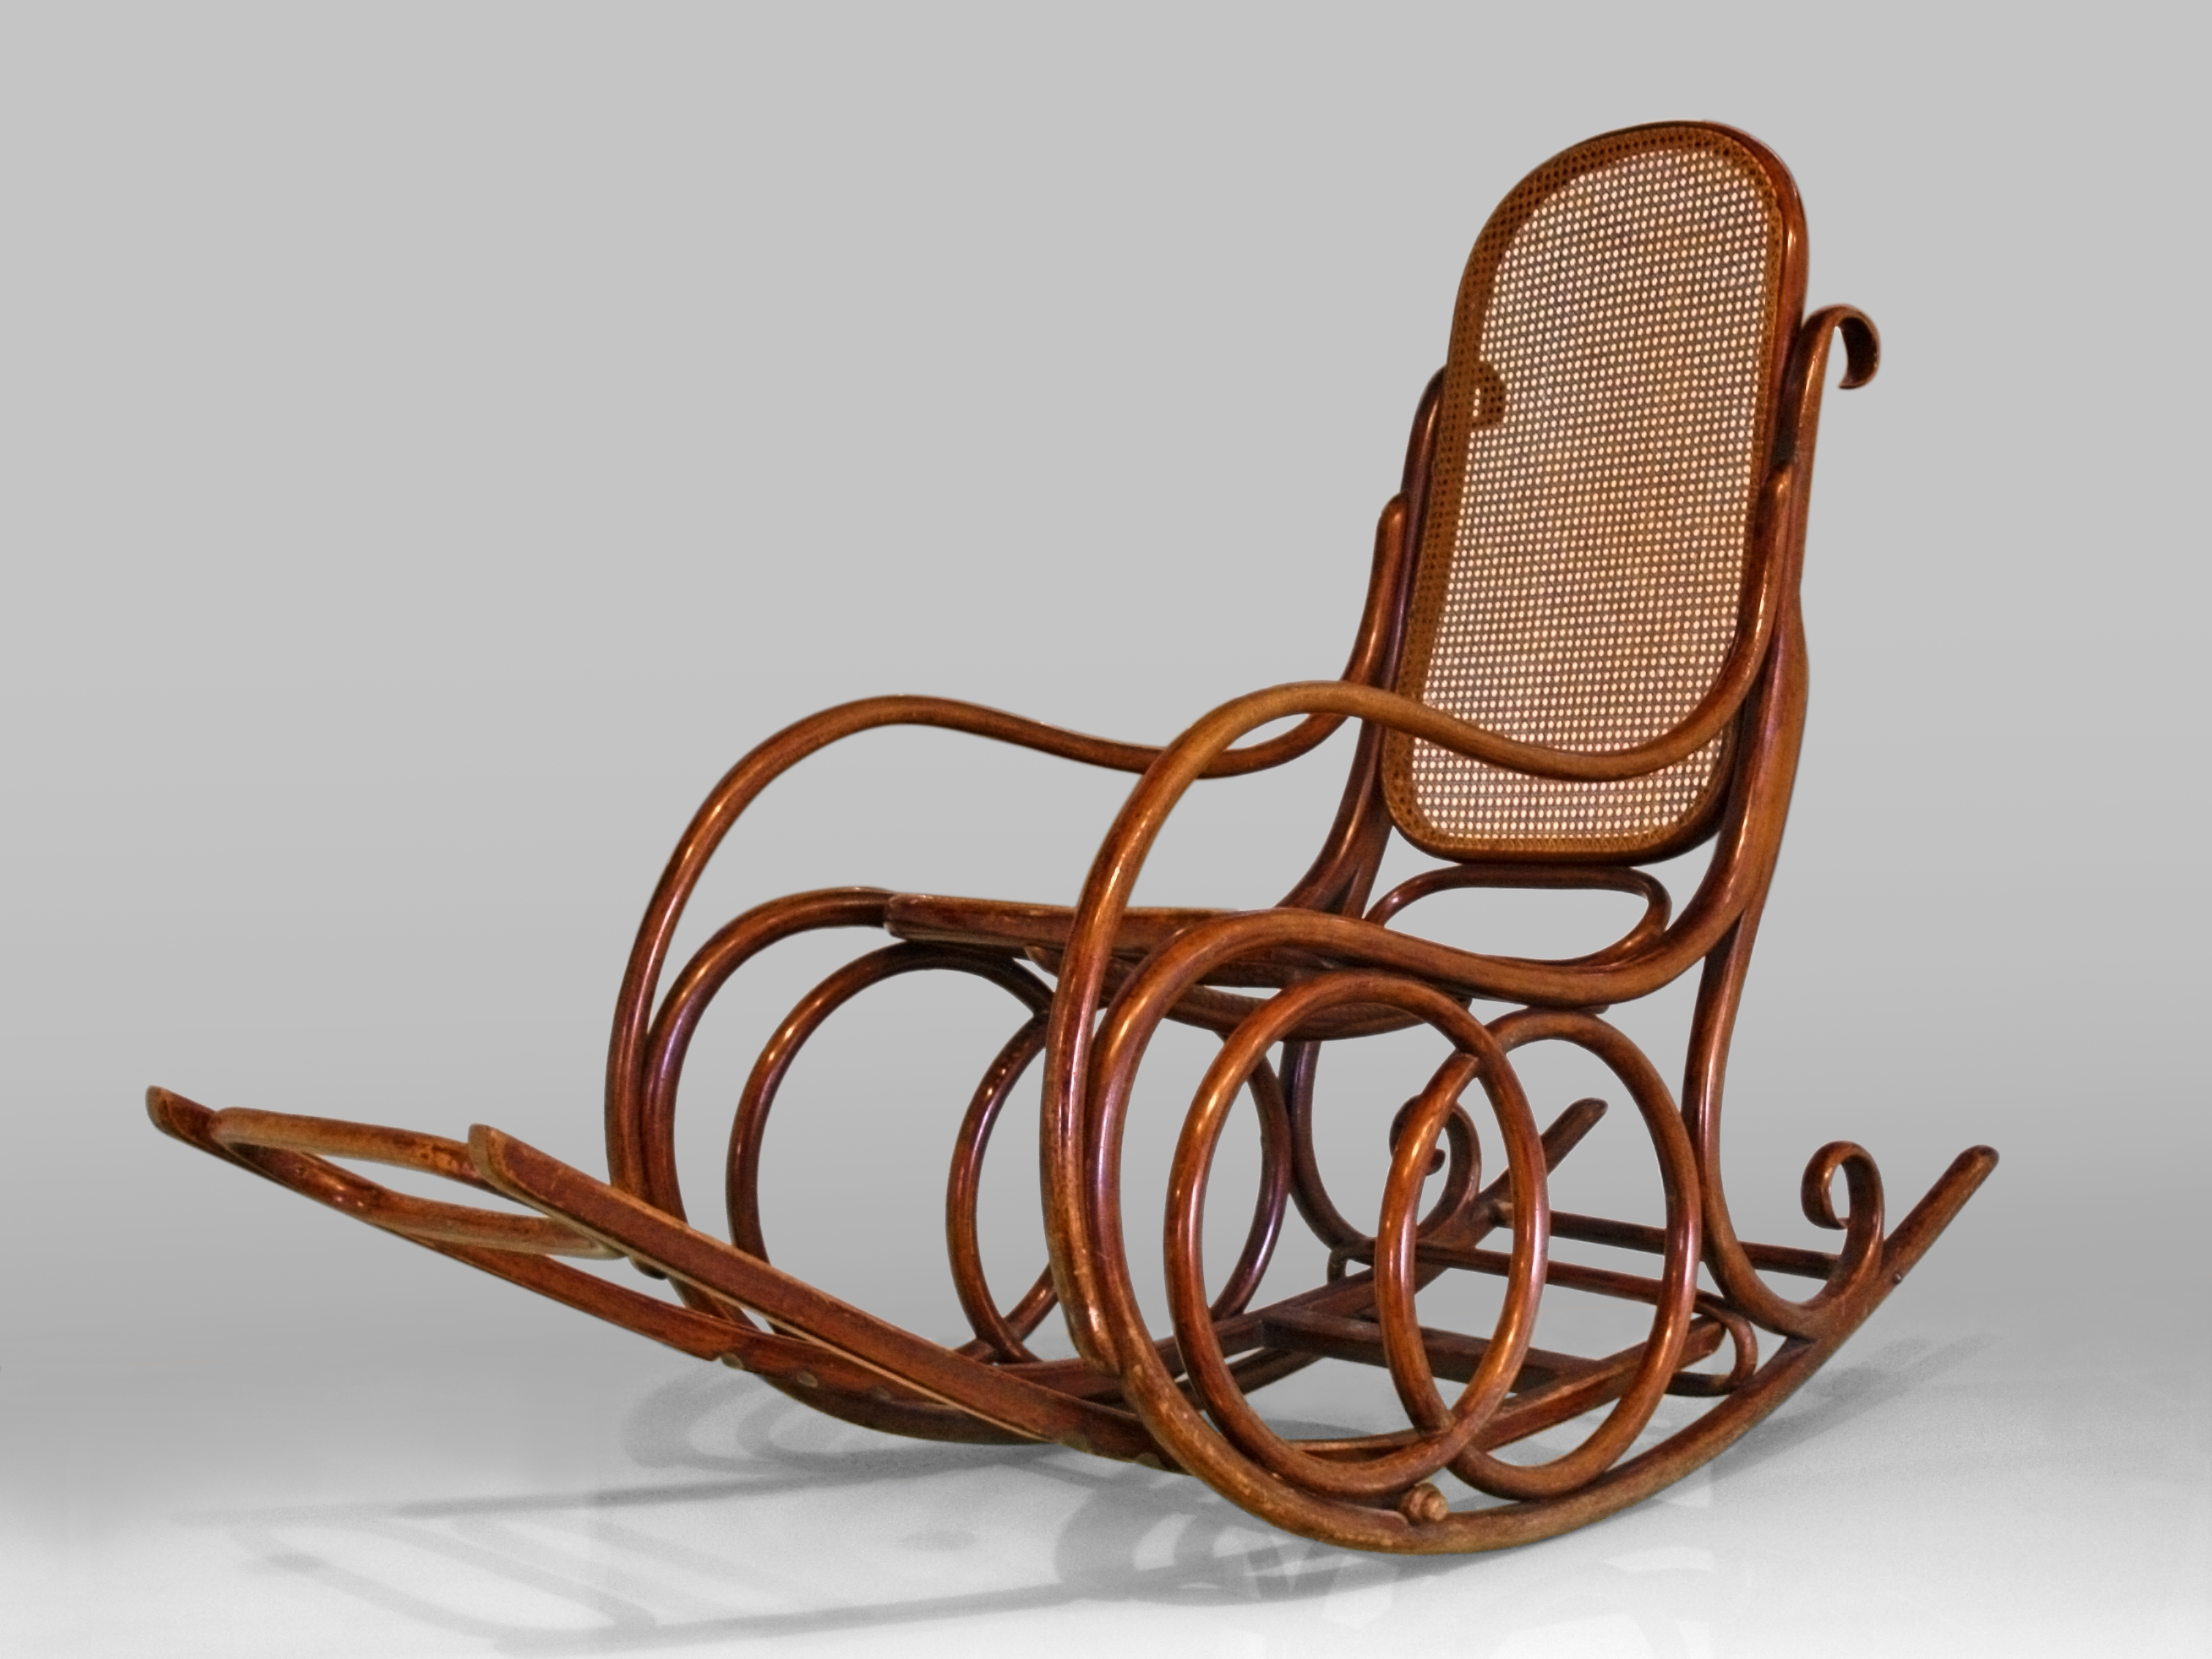 Модели кресла качалки